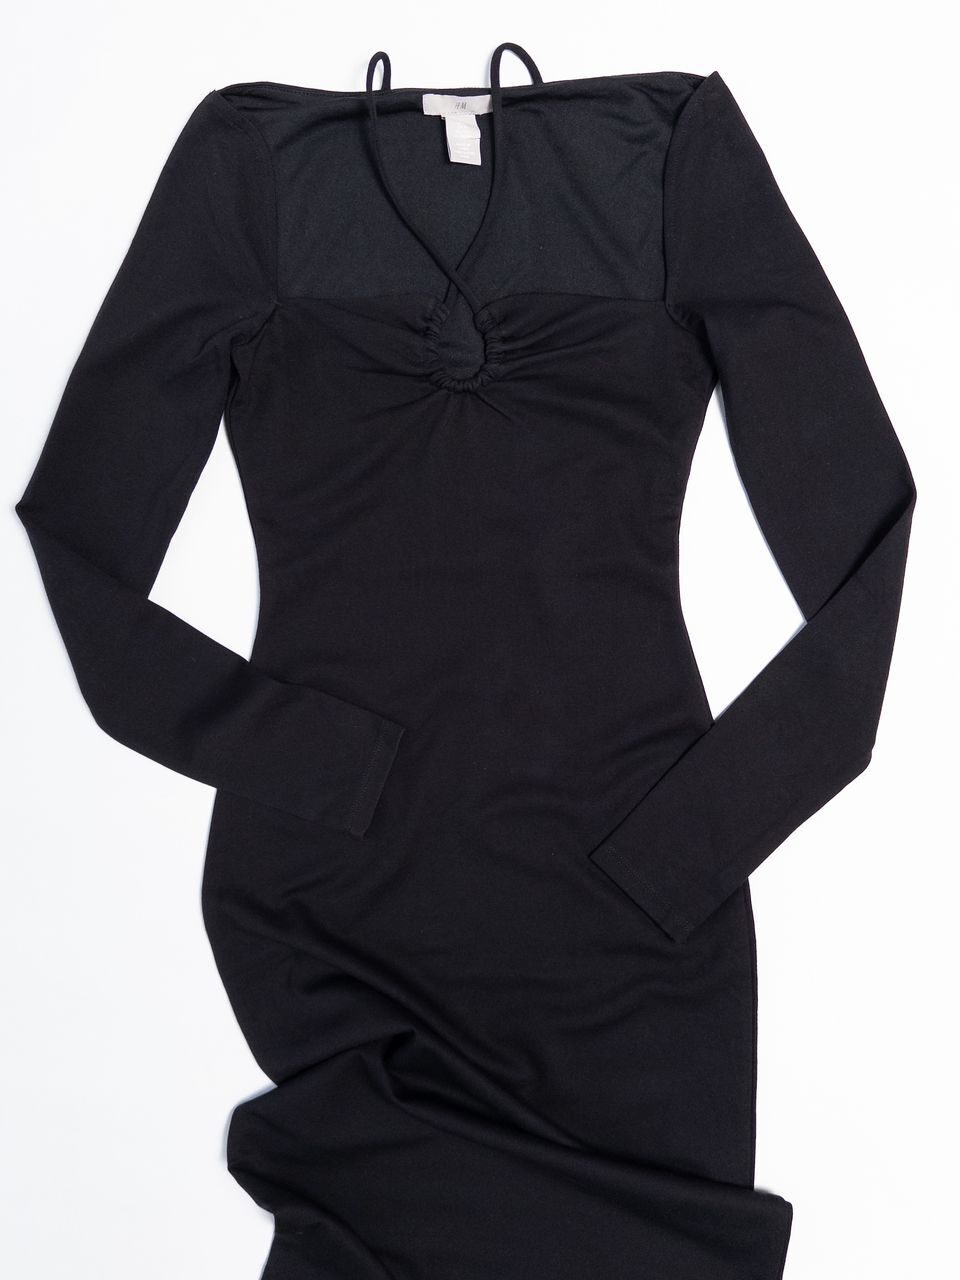 Платье трикотажное женское вырез, спереди и узкая завязка на шее цвет черный размер EUR XS (rus 38-40) H&M